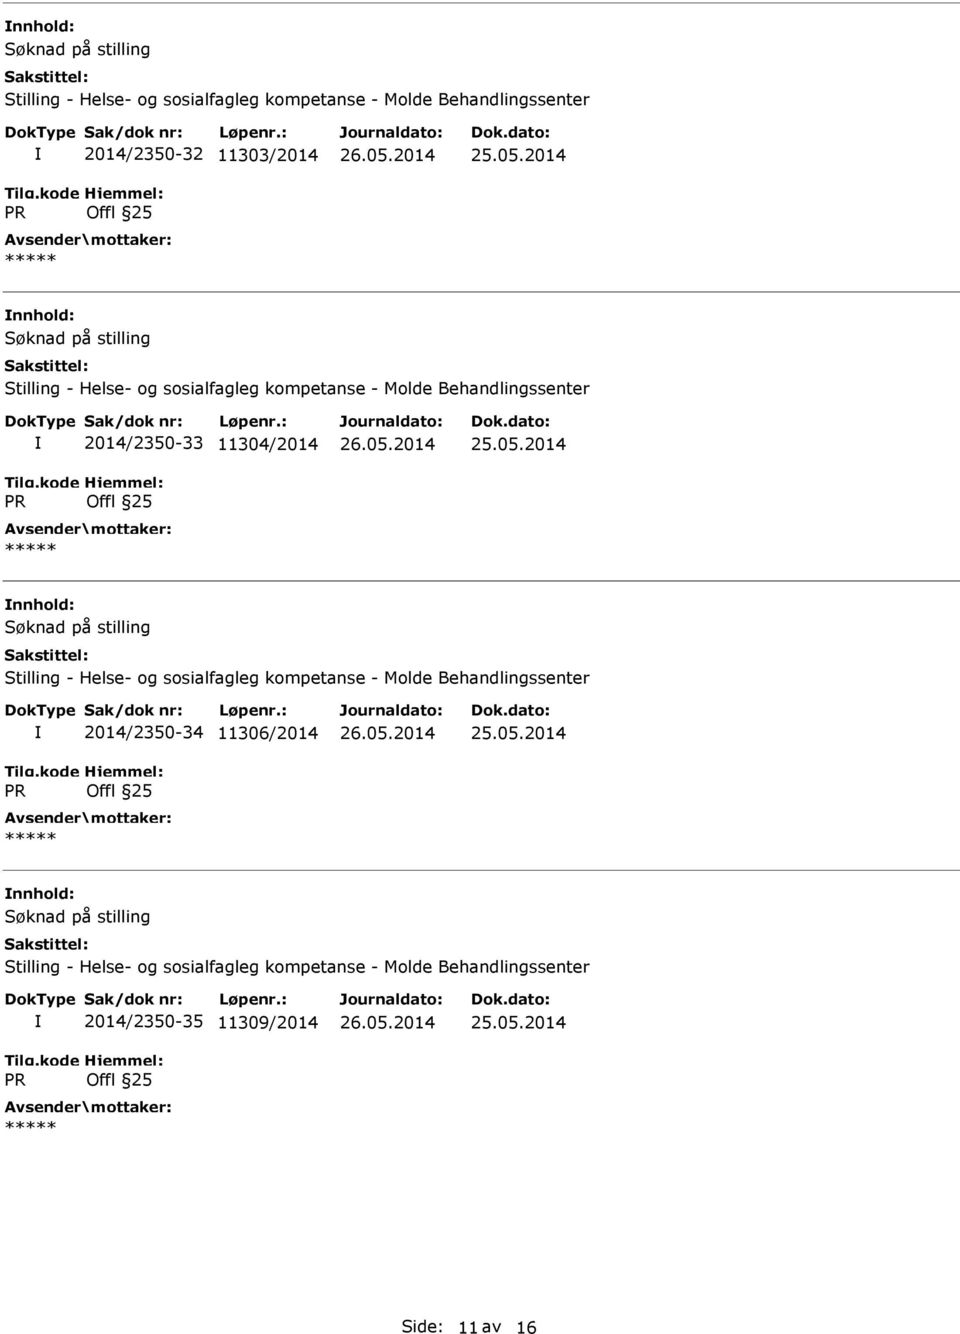 2014 Søknad på stilling Stilling - Helse- og sosialfagleg kompetanse - Molde Behandlingssenter R 2014/2350-34 11306/2014 Offl 25 25.05.